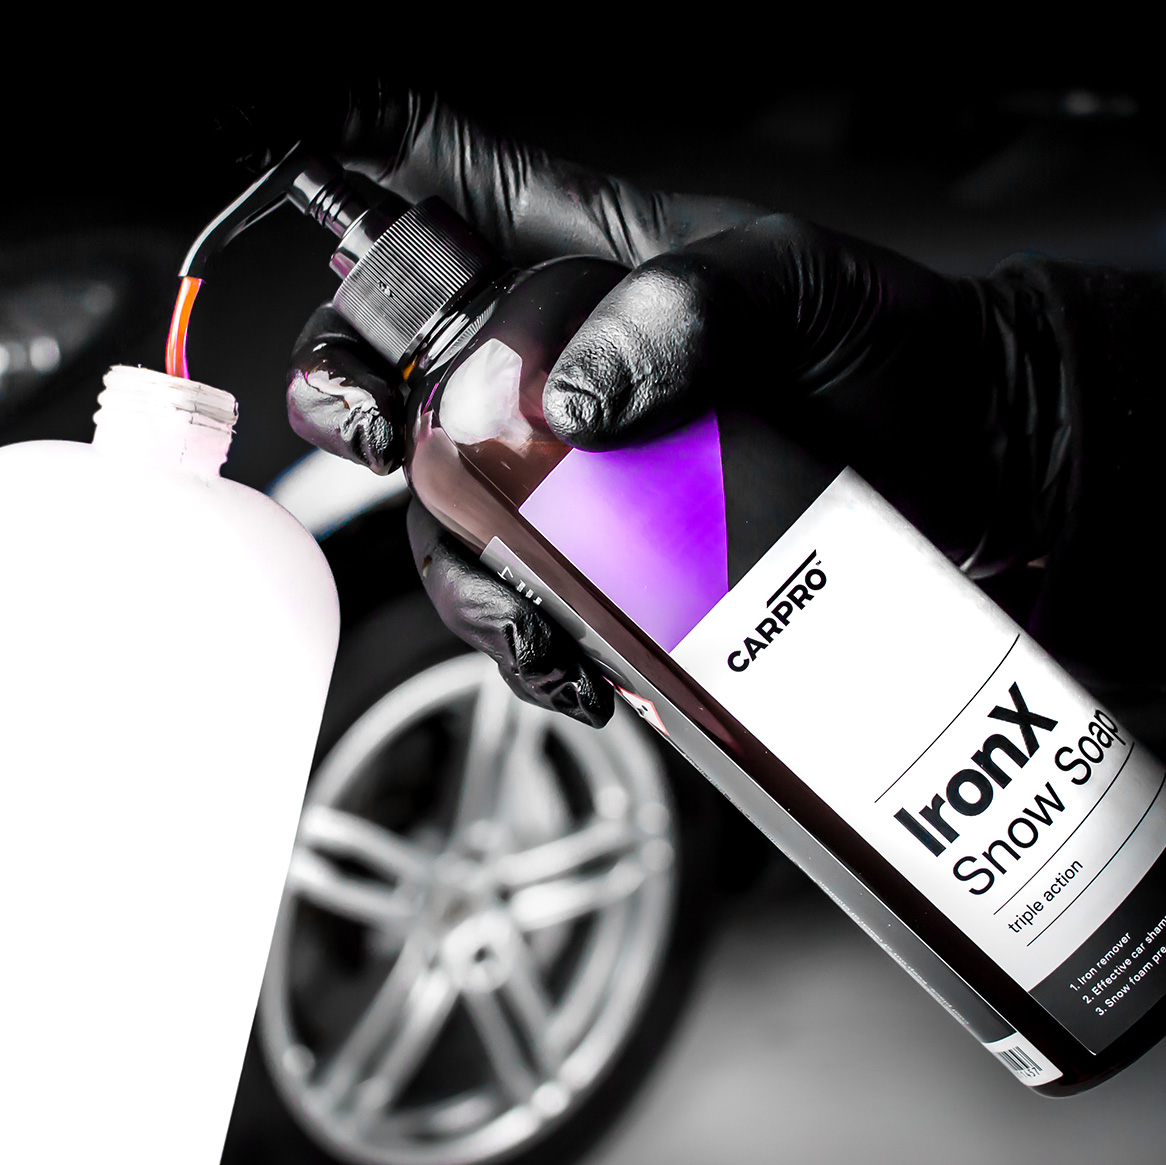 IronX Snow Soap